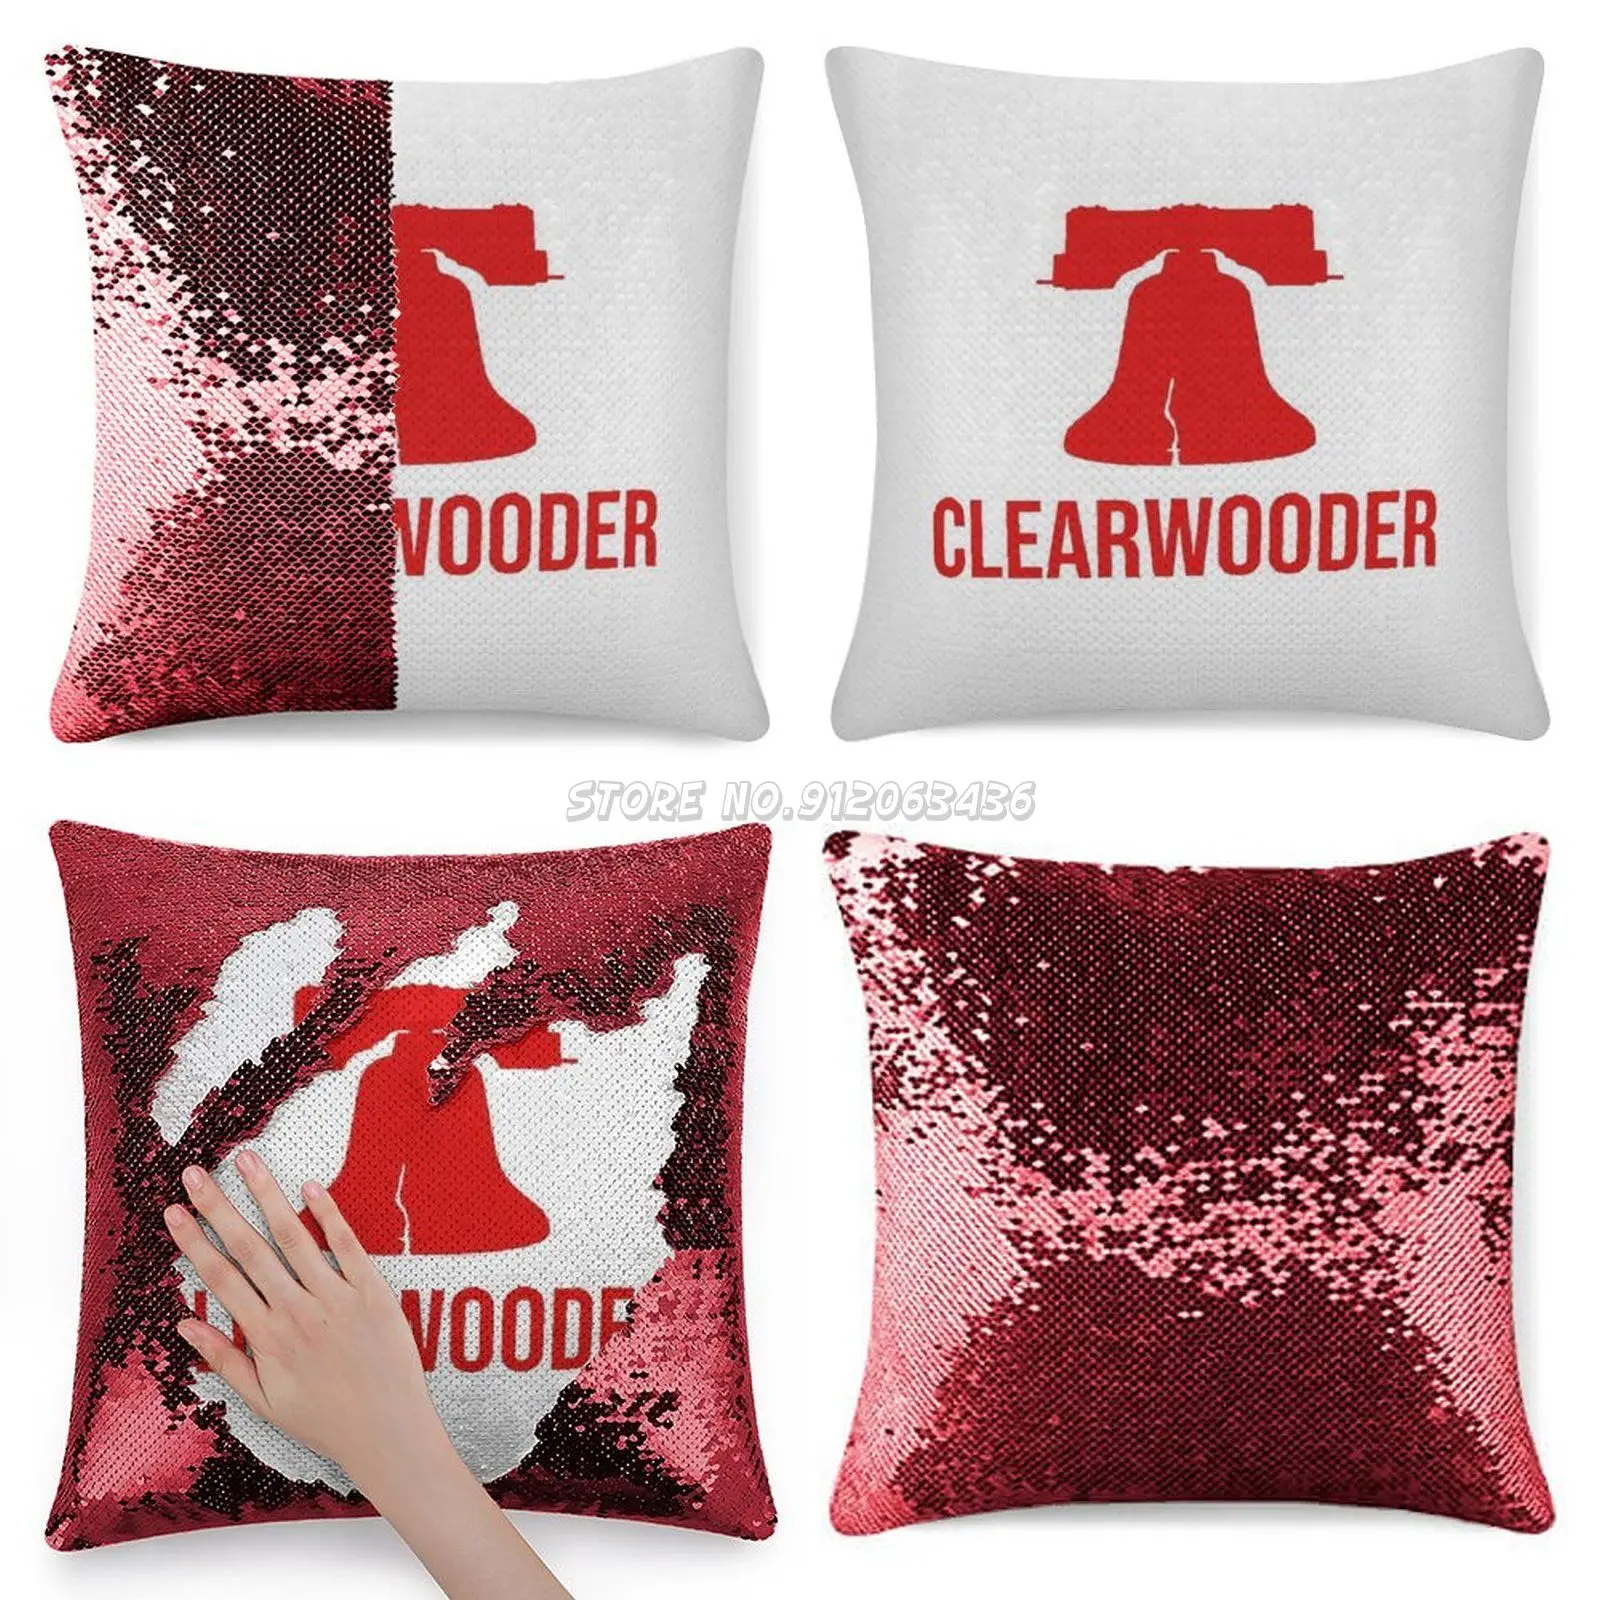 

Наволочка Clearwooder с красными блестками, декоративная подушка с блестками для вечерние НКИ, кафе, дома, дивана, Clearwooder, Калифорния, Харпер, ...